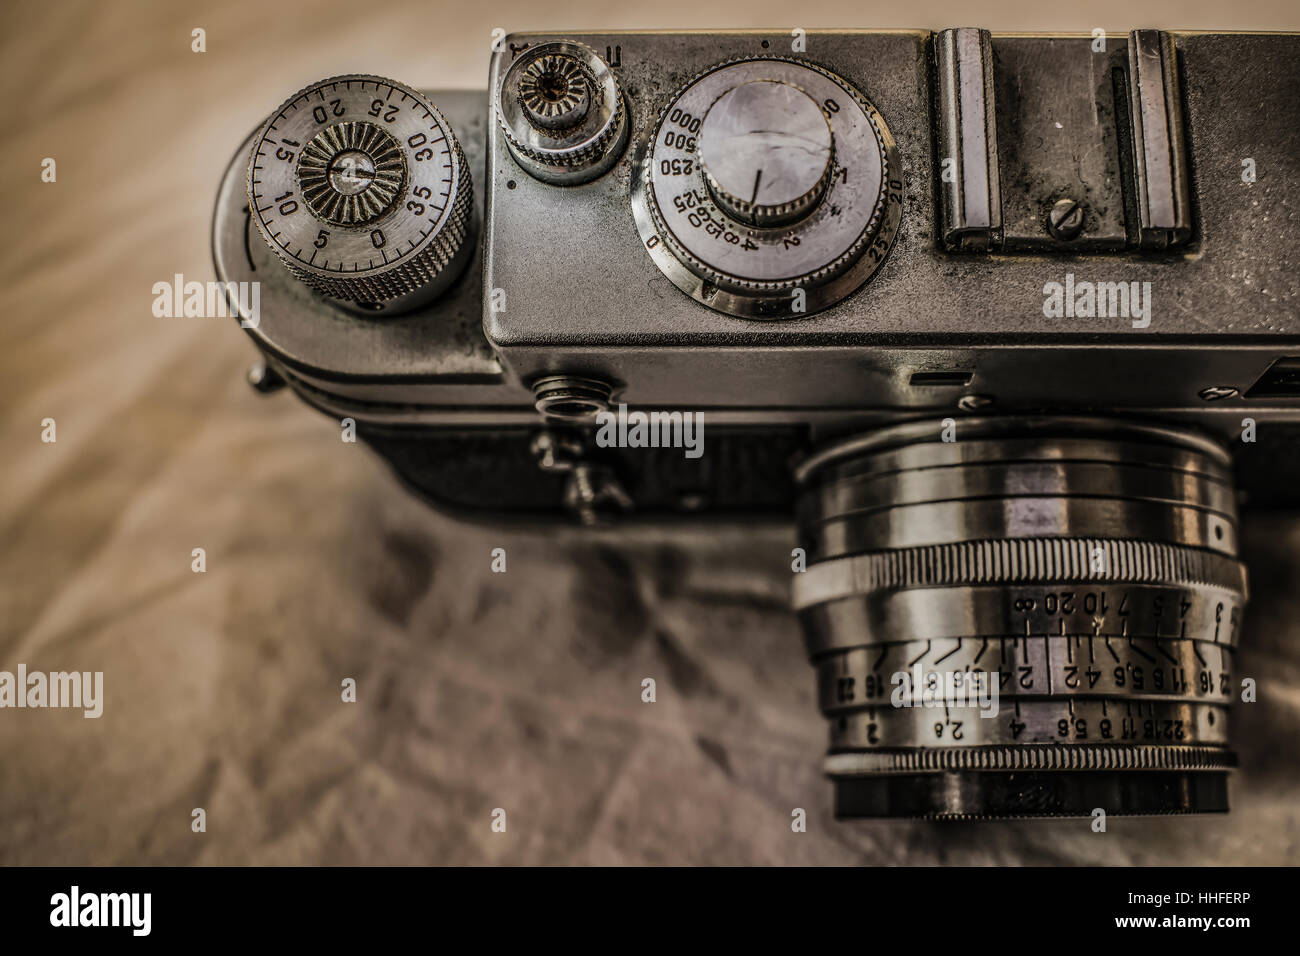 Vecchio classico russo una pellicola analogica fotocamere con controlli manuali su tela sporca con look vintage Foto Stock